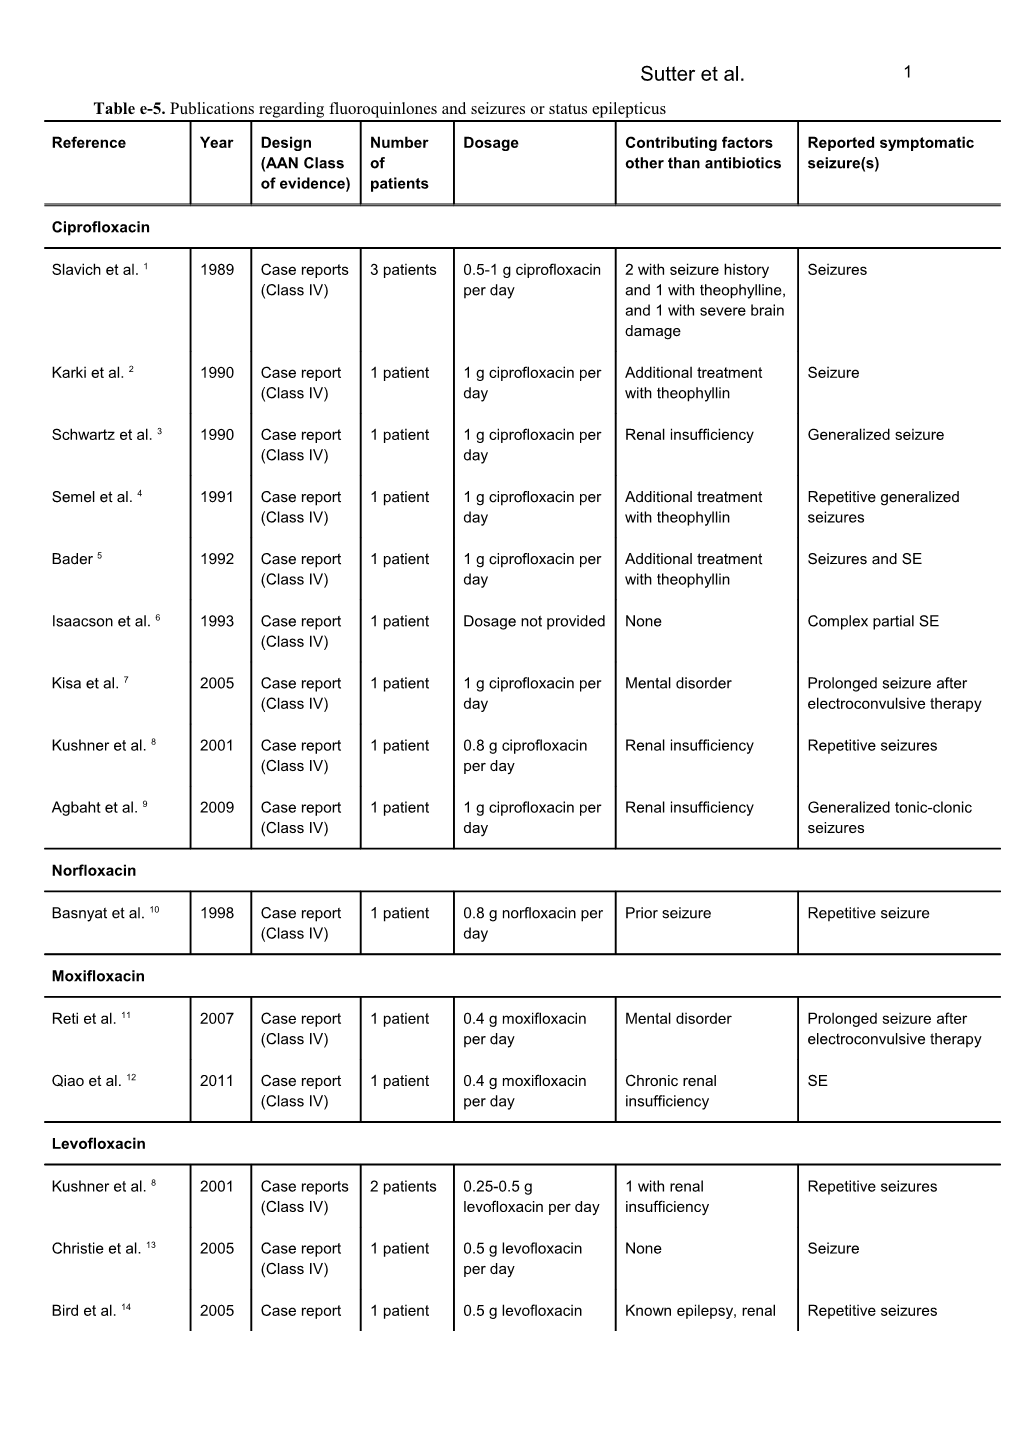 Table E-5. Publications Regarding Fluoroquinlones and Seizures Or Status Epilepticus